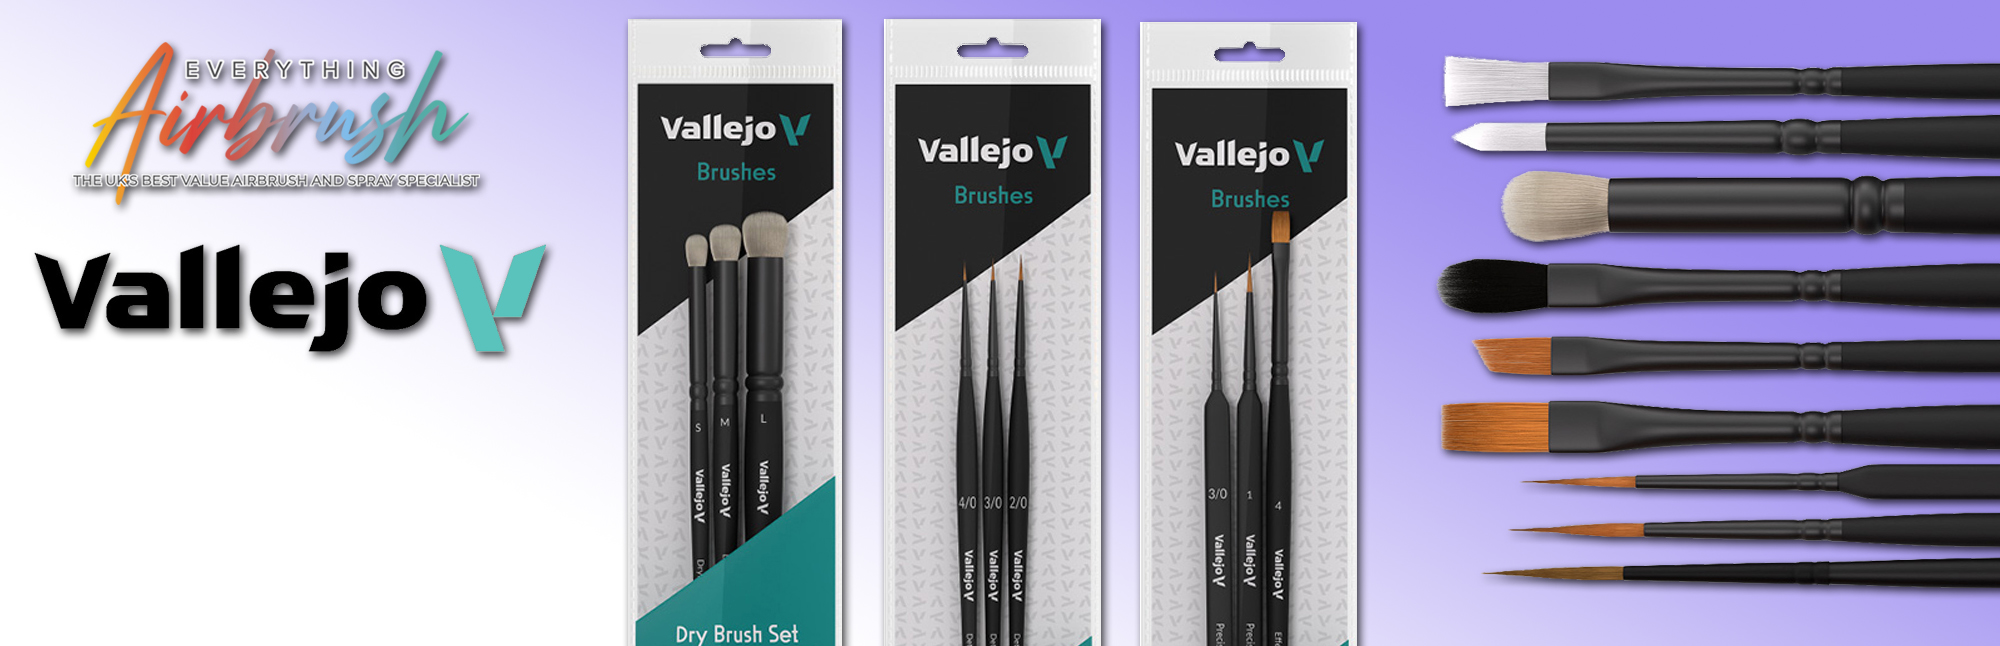 Vallejo Brush Range - Now in Stock